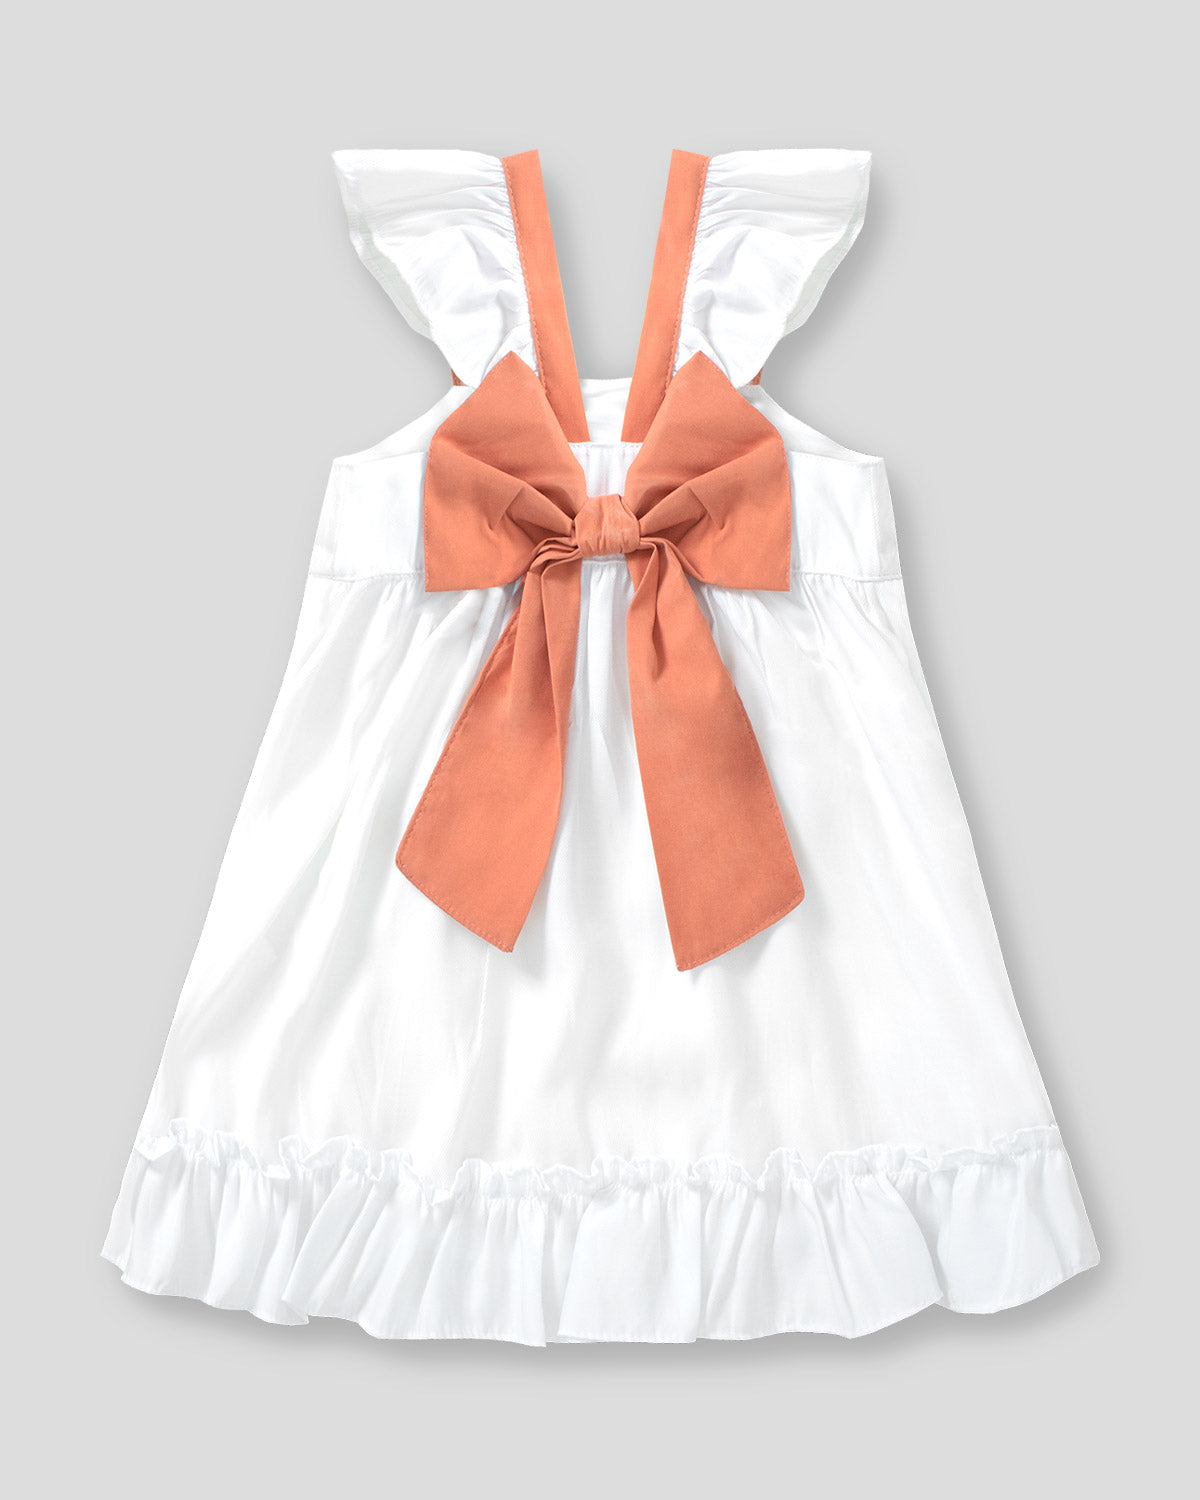 Vestido blanco de boleros con moño terracota en espalda para niña